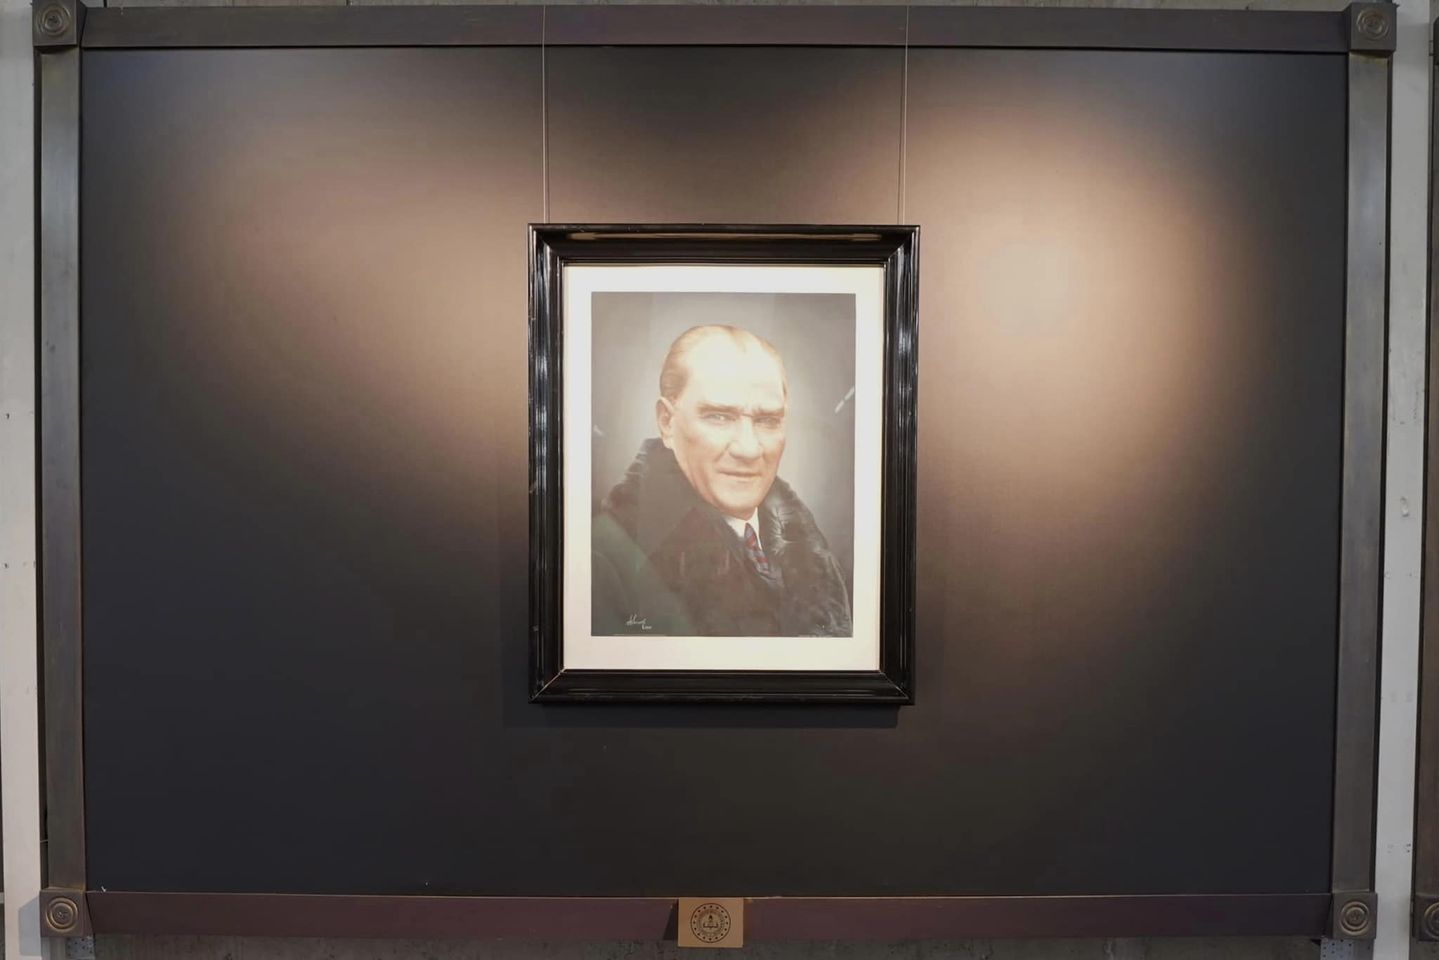 Millî Eğitim Bakanı Yusuf Tekin, Atatürk Sergisi ve Tiyatro Oyununda